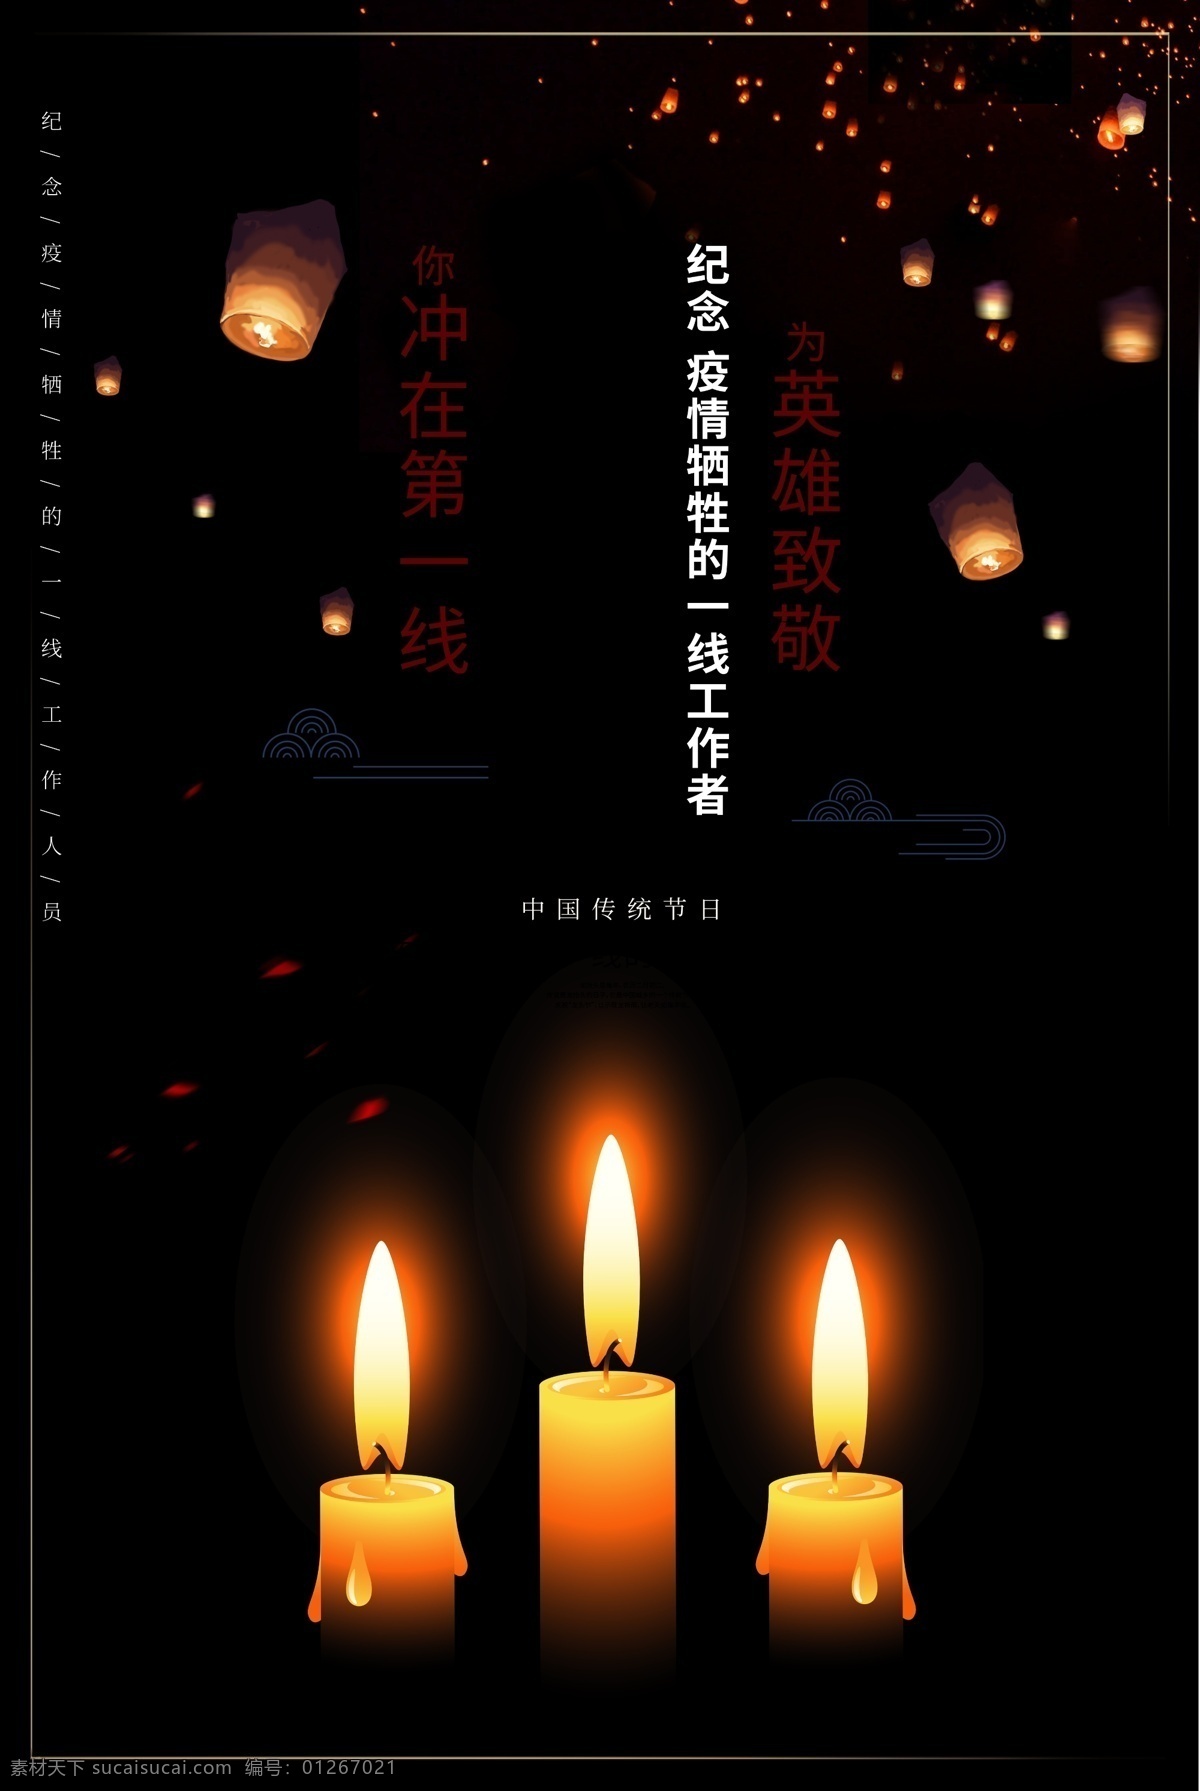 清明祭 中国传统节日 为英雄致敬 冲在第一线 纪念疫情牺牲 工作者